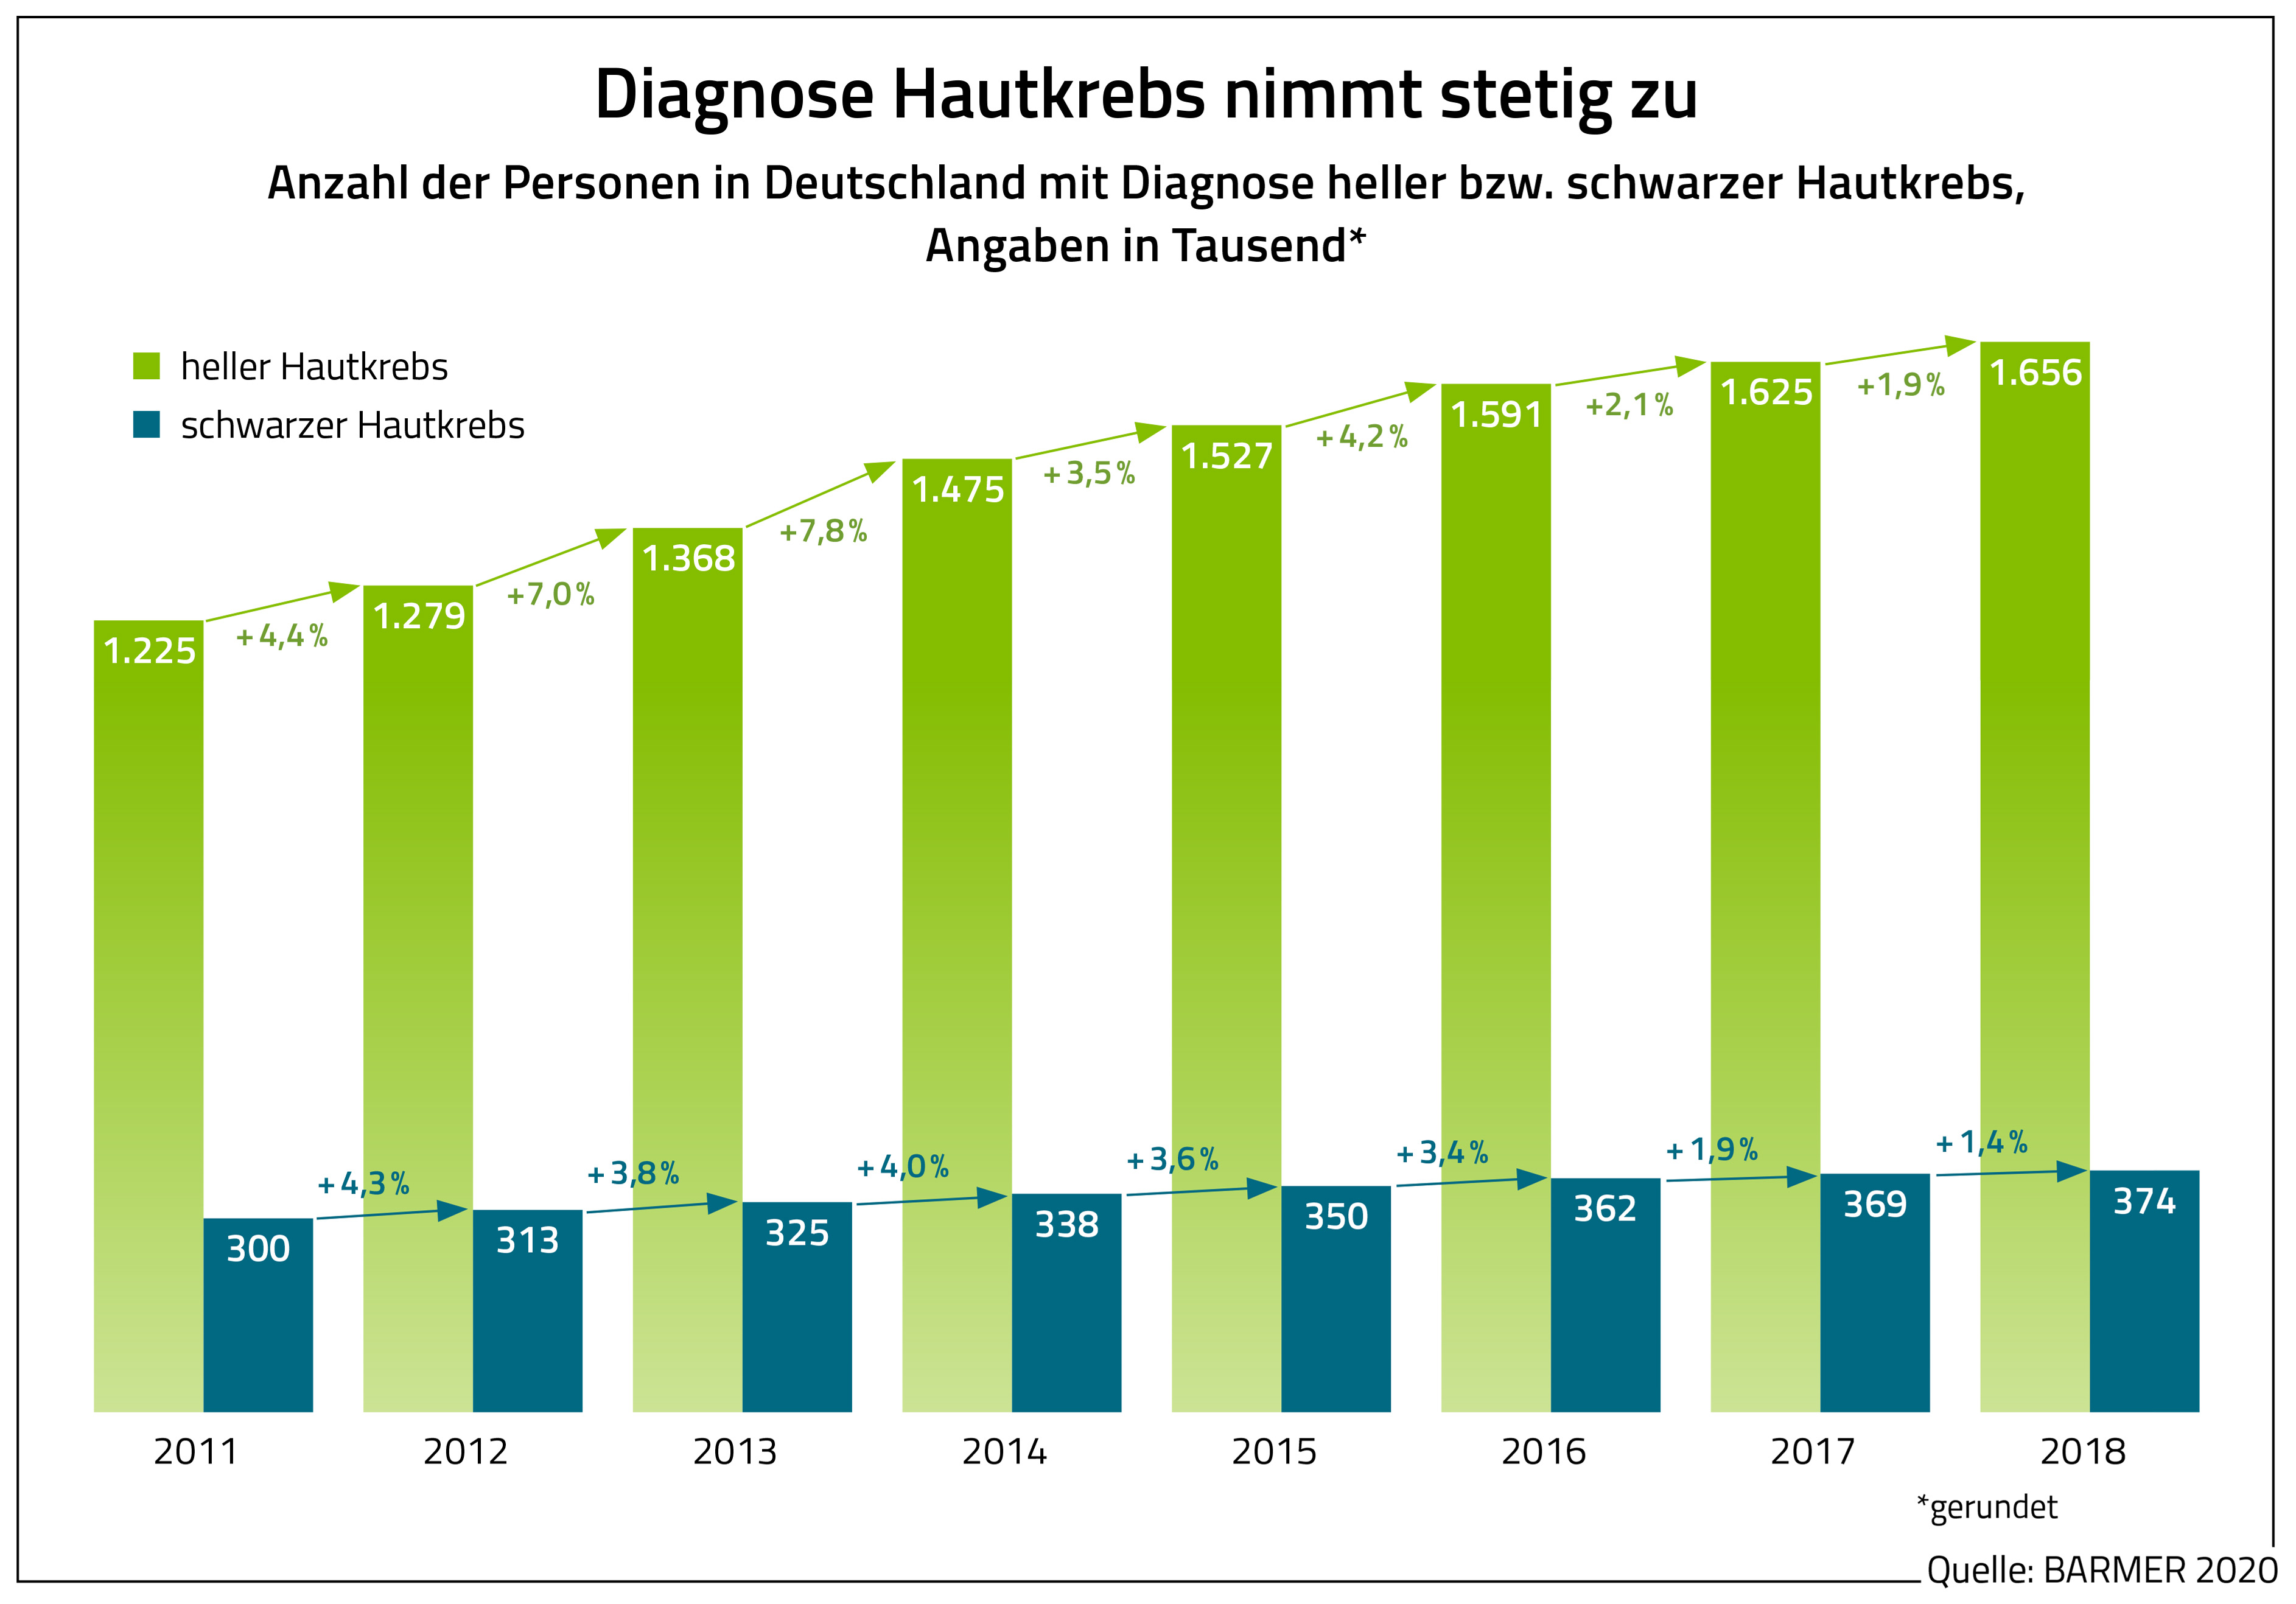 Die Grafik zeigt die Anzahl der Personen in Deutschland mit Diagnose heller beziehungsweise schwarzer Hautkrebs